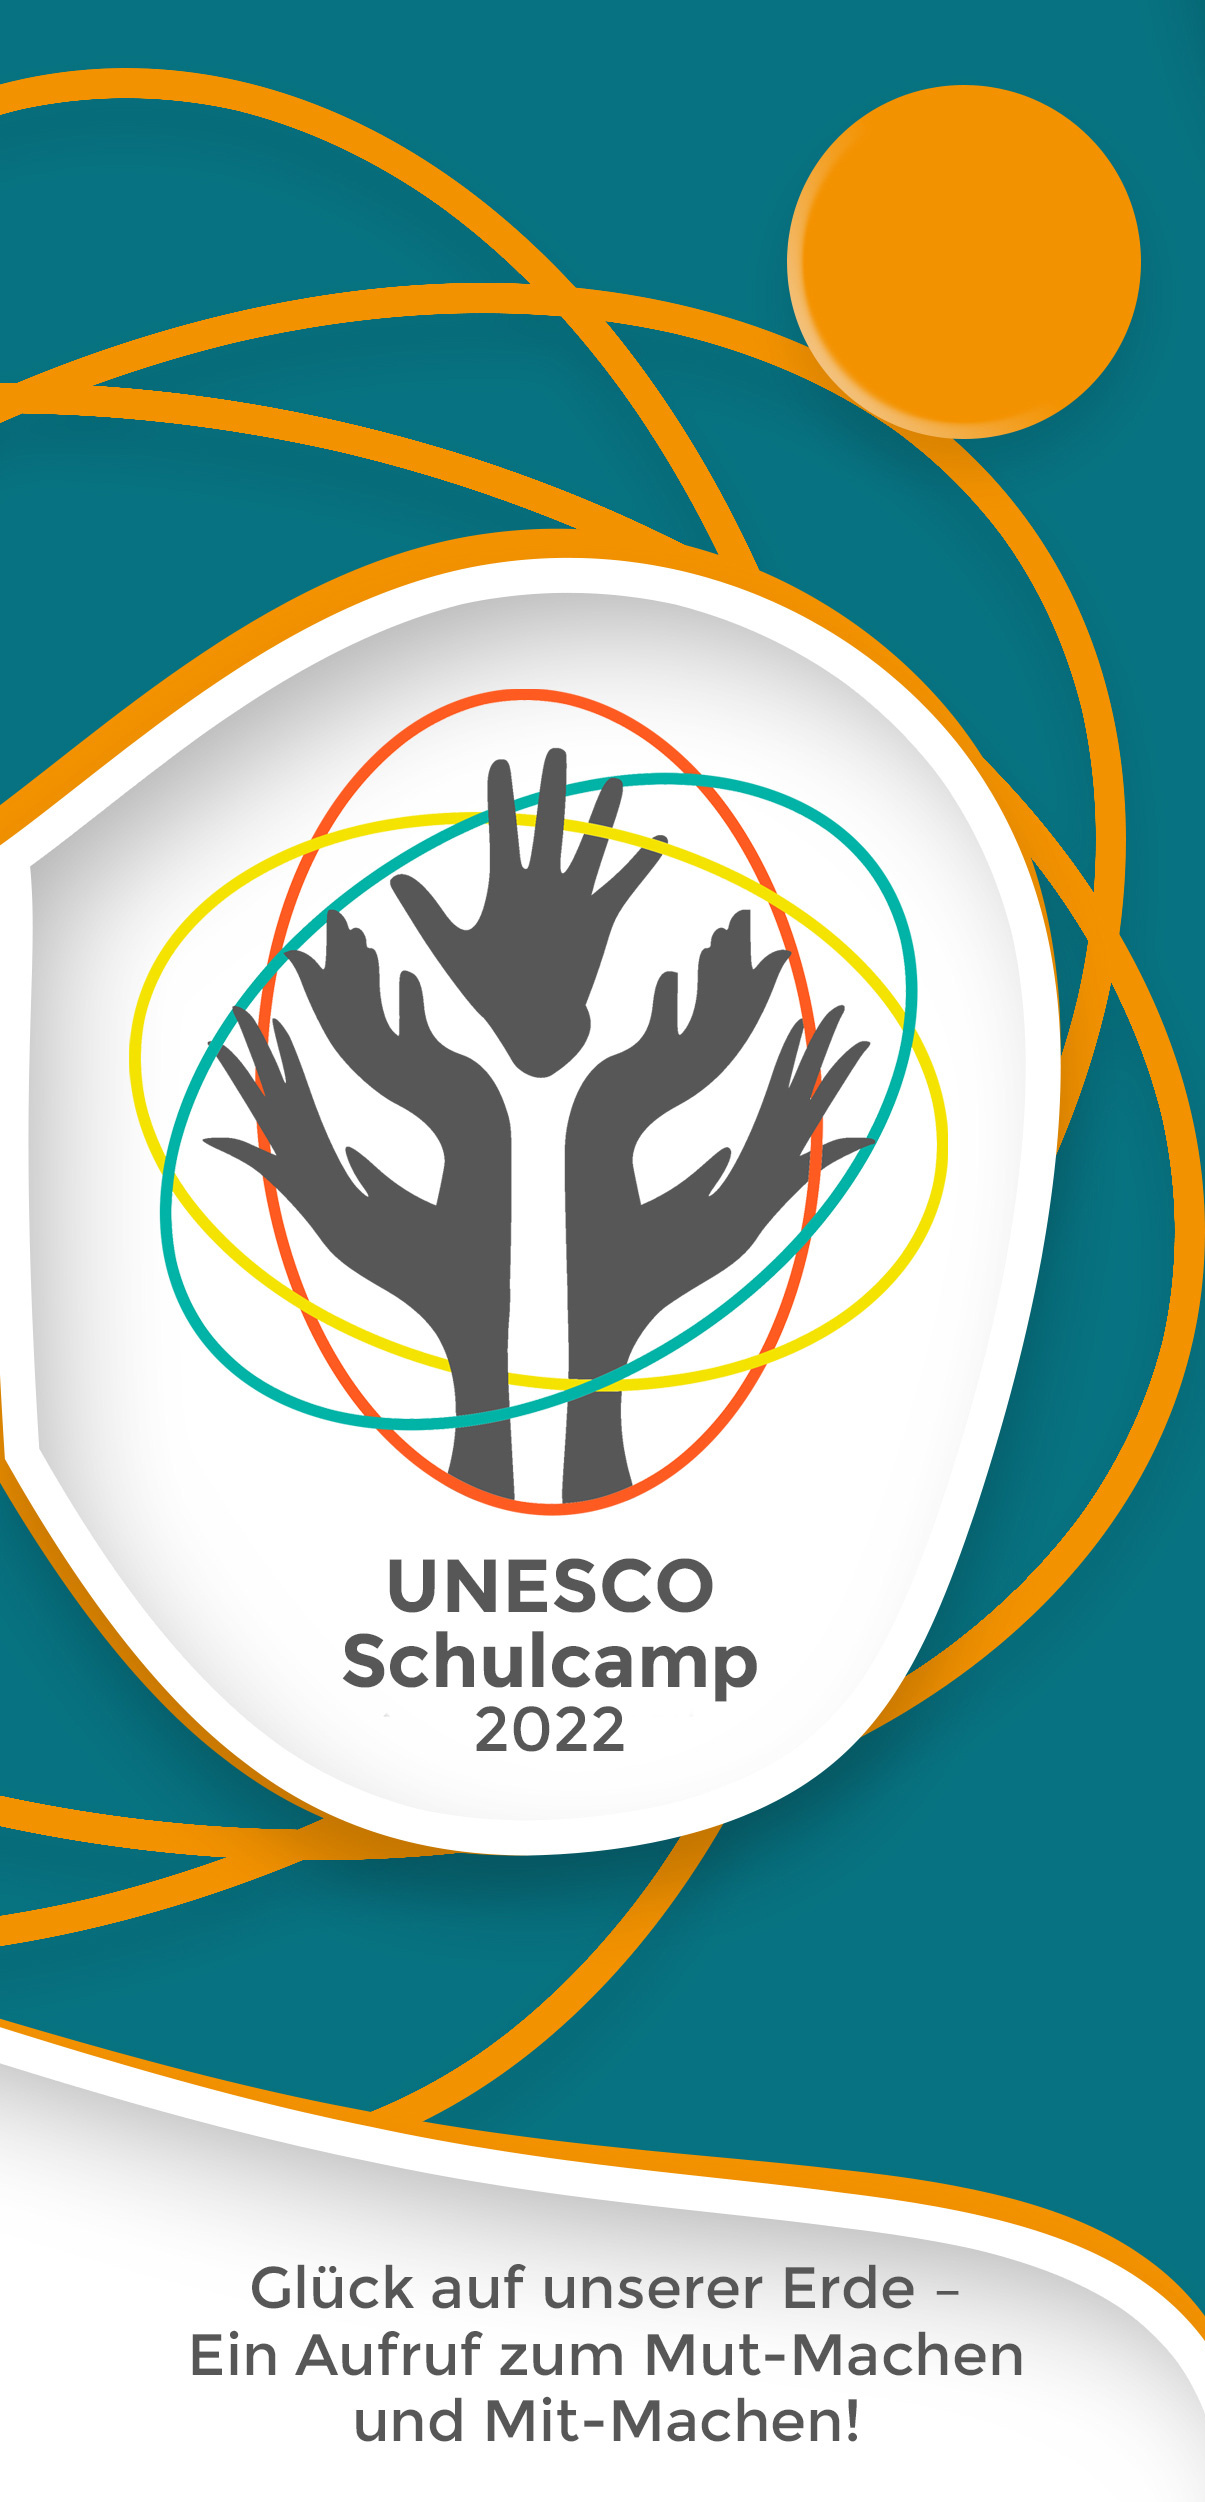 Das UNESCO-Schulcamp wurde von der Fachstelle Uferlos des AGJF Sachsen e. V. ausgerichtet.